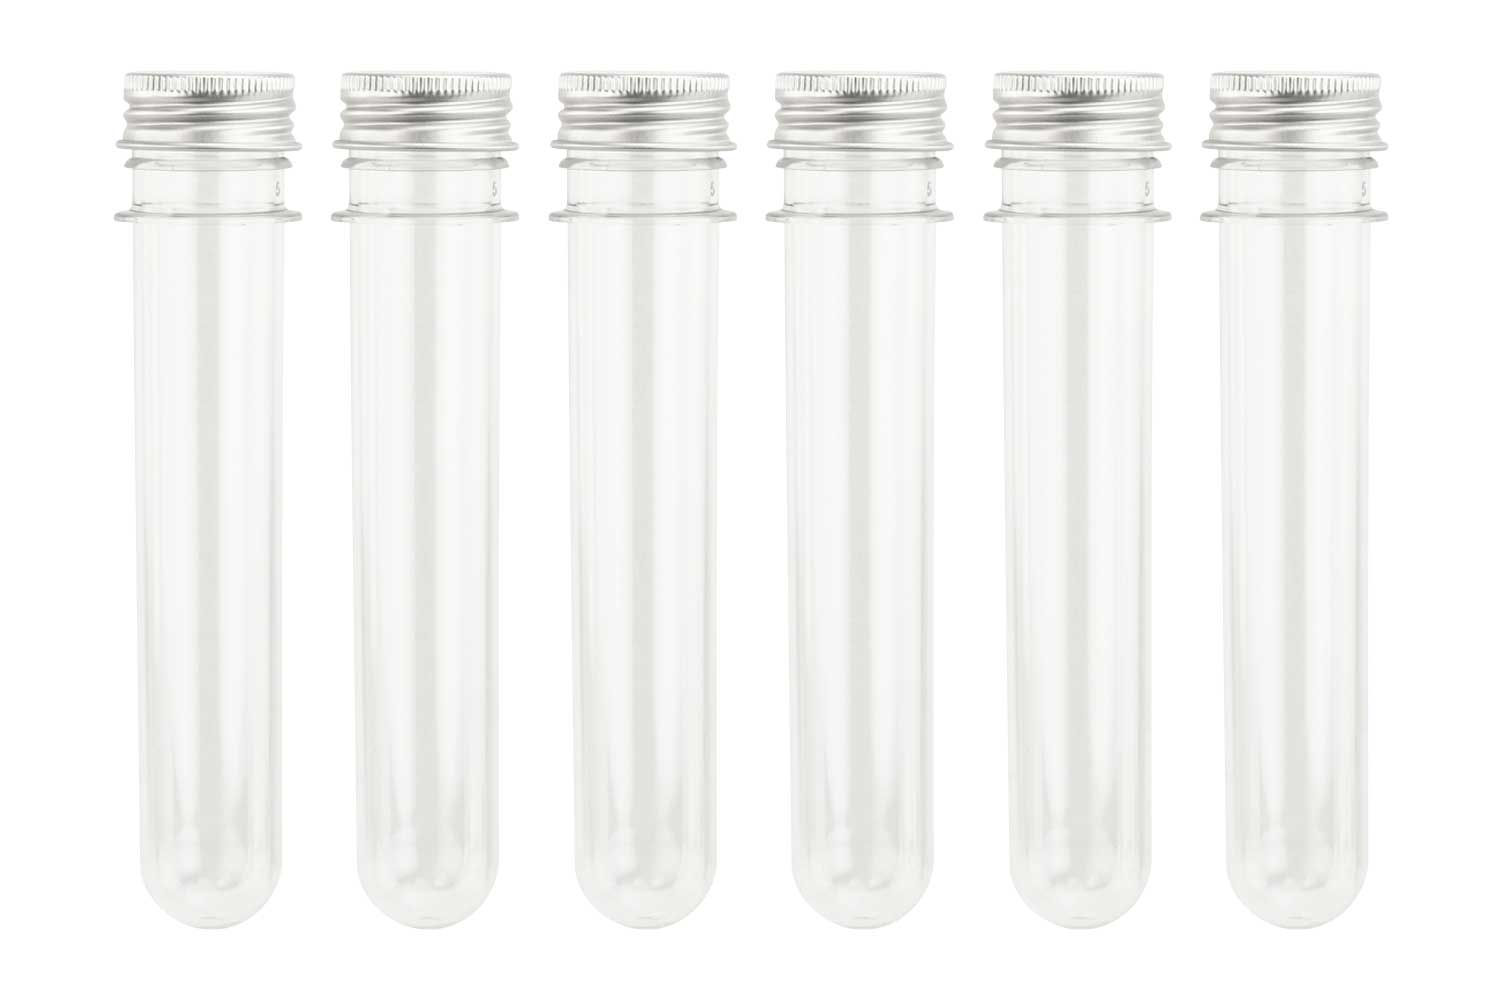 Tubes à essai transparents en plastique avec bouchons, tubes à